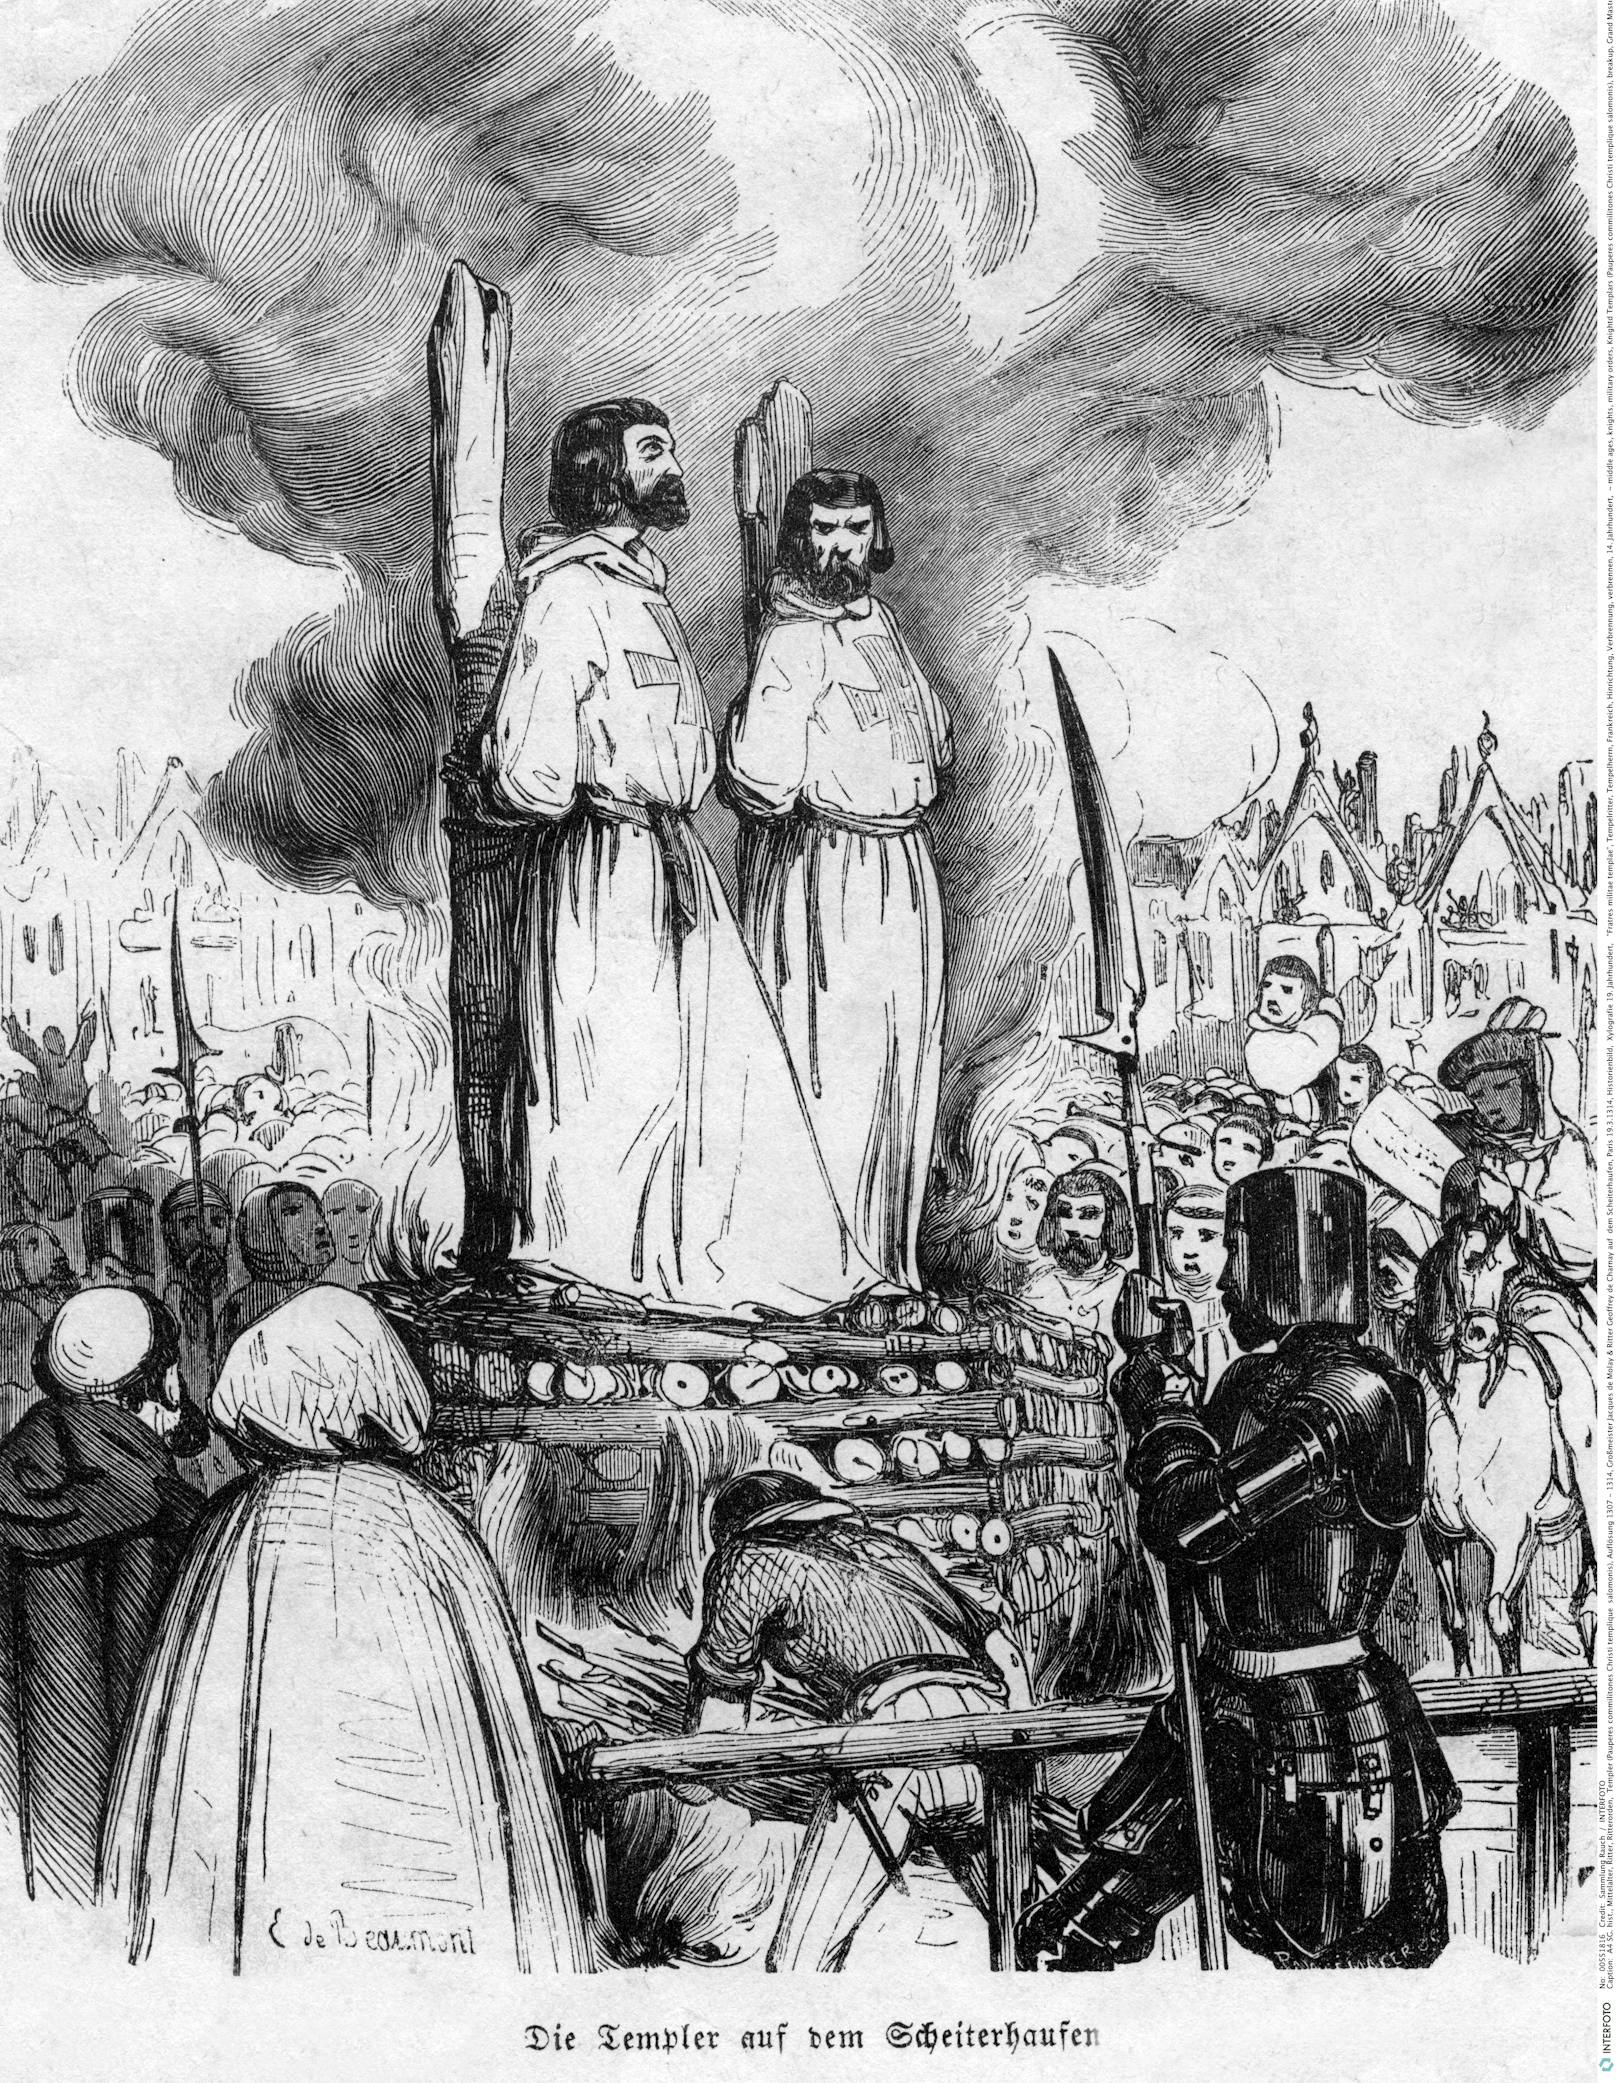 <strong>Das Ende des Tempelordens:</strong> Im Oktober 1307 befahl der französische König Philipp IV. die Verhaftung aller Mitglieder des Tempelordens. (Tempelritter)